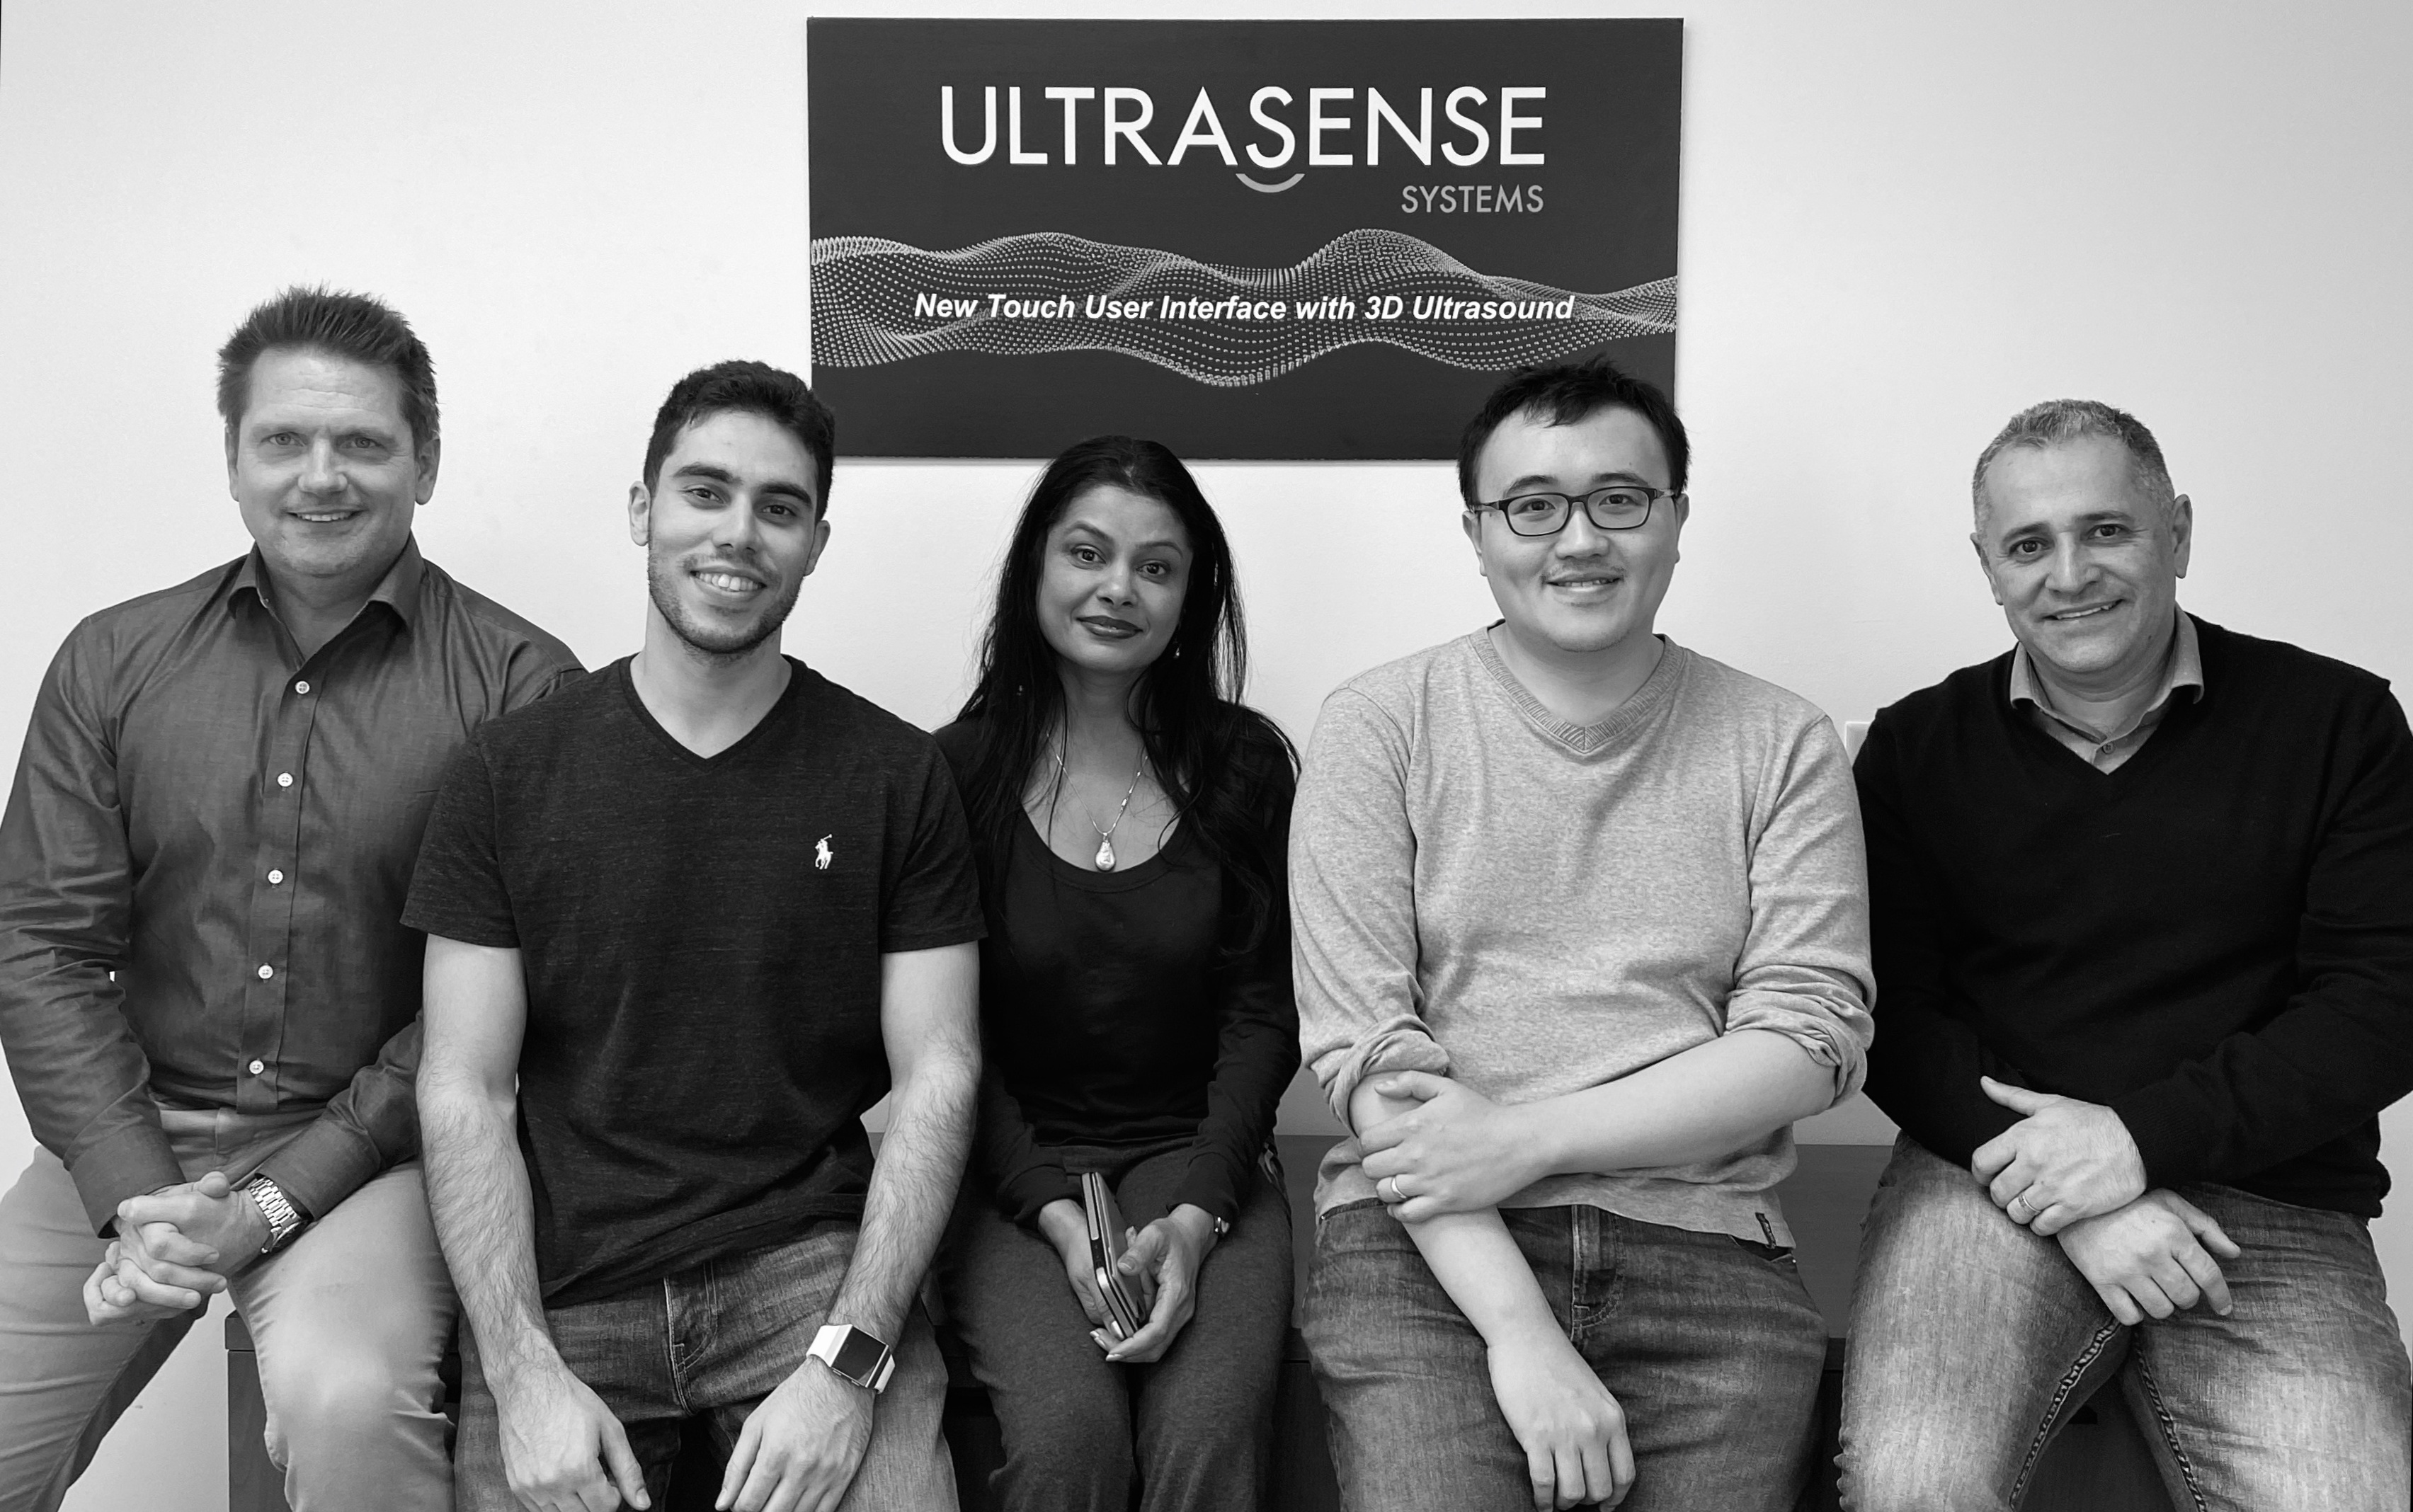 Robert Bosch Venture Capital partecipa al finanziamento da 20 milioni di dollari di UltraSense Systems